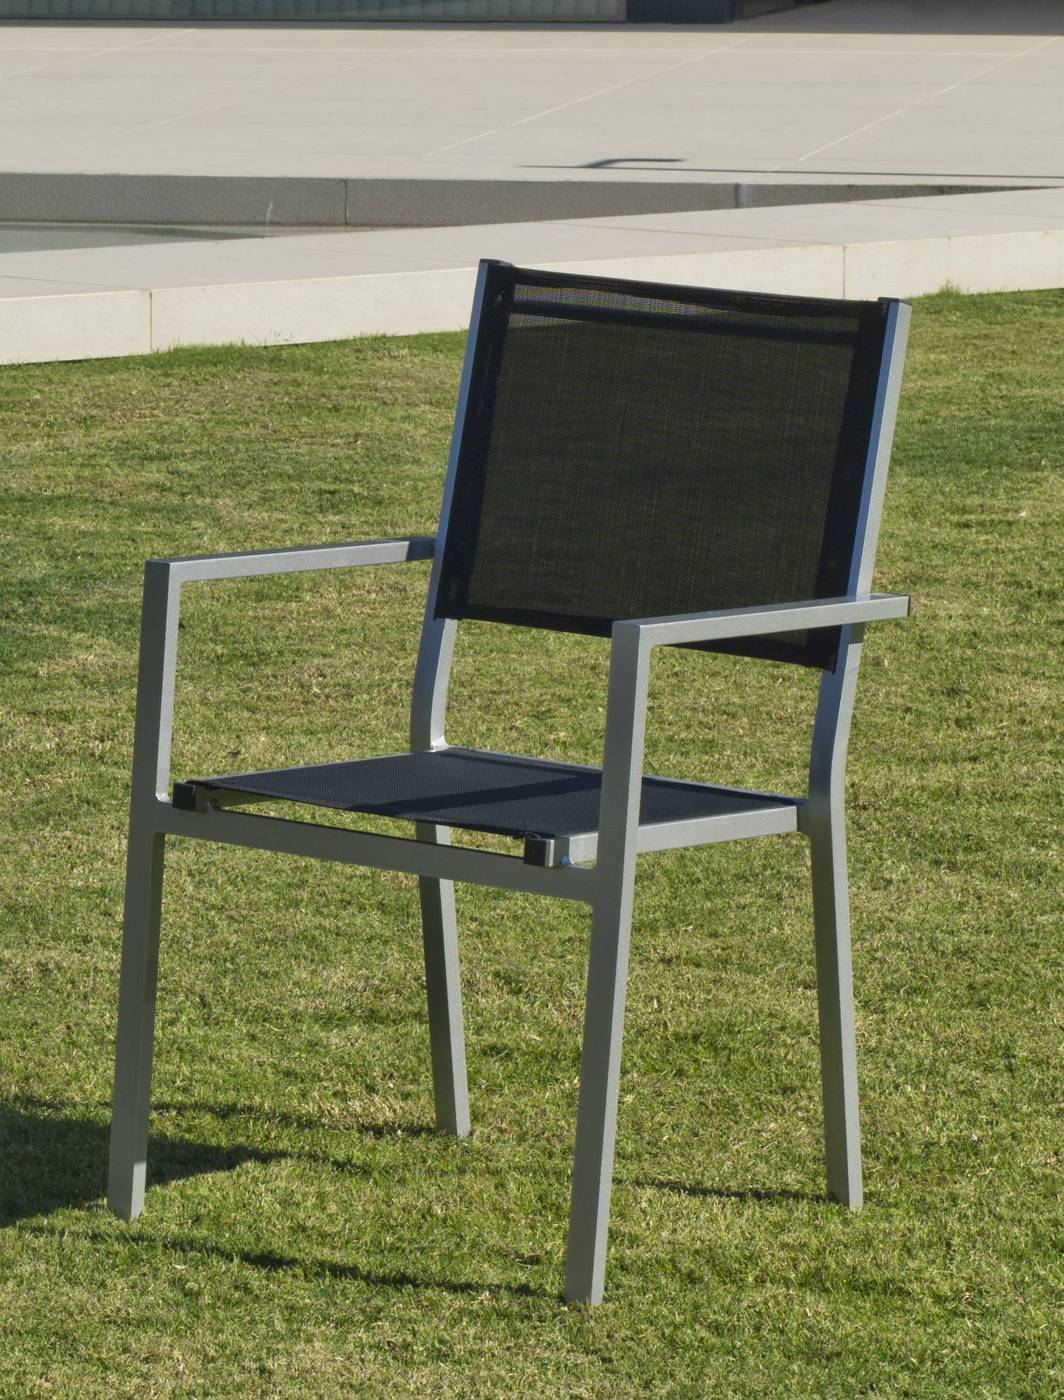 Set Aluminio Córcega 160-4 - Conjunto aluminio para jardín: Mesa rectangular 160 cm + 4 sillones de textilen. Disponible en color blanco, plata y antracita.